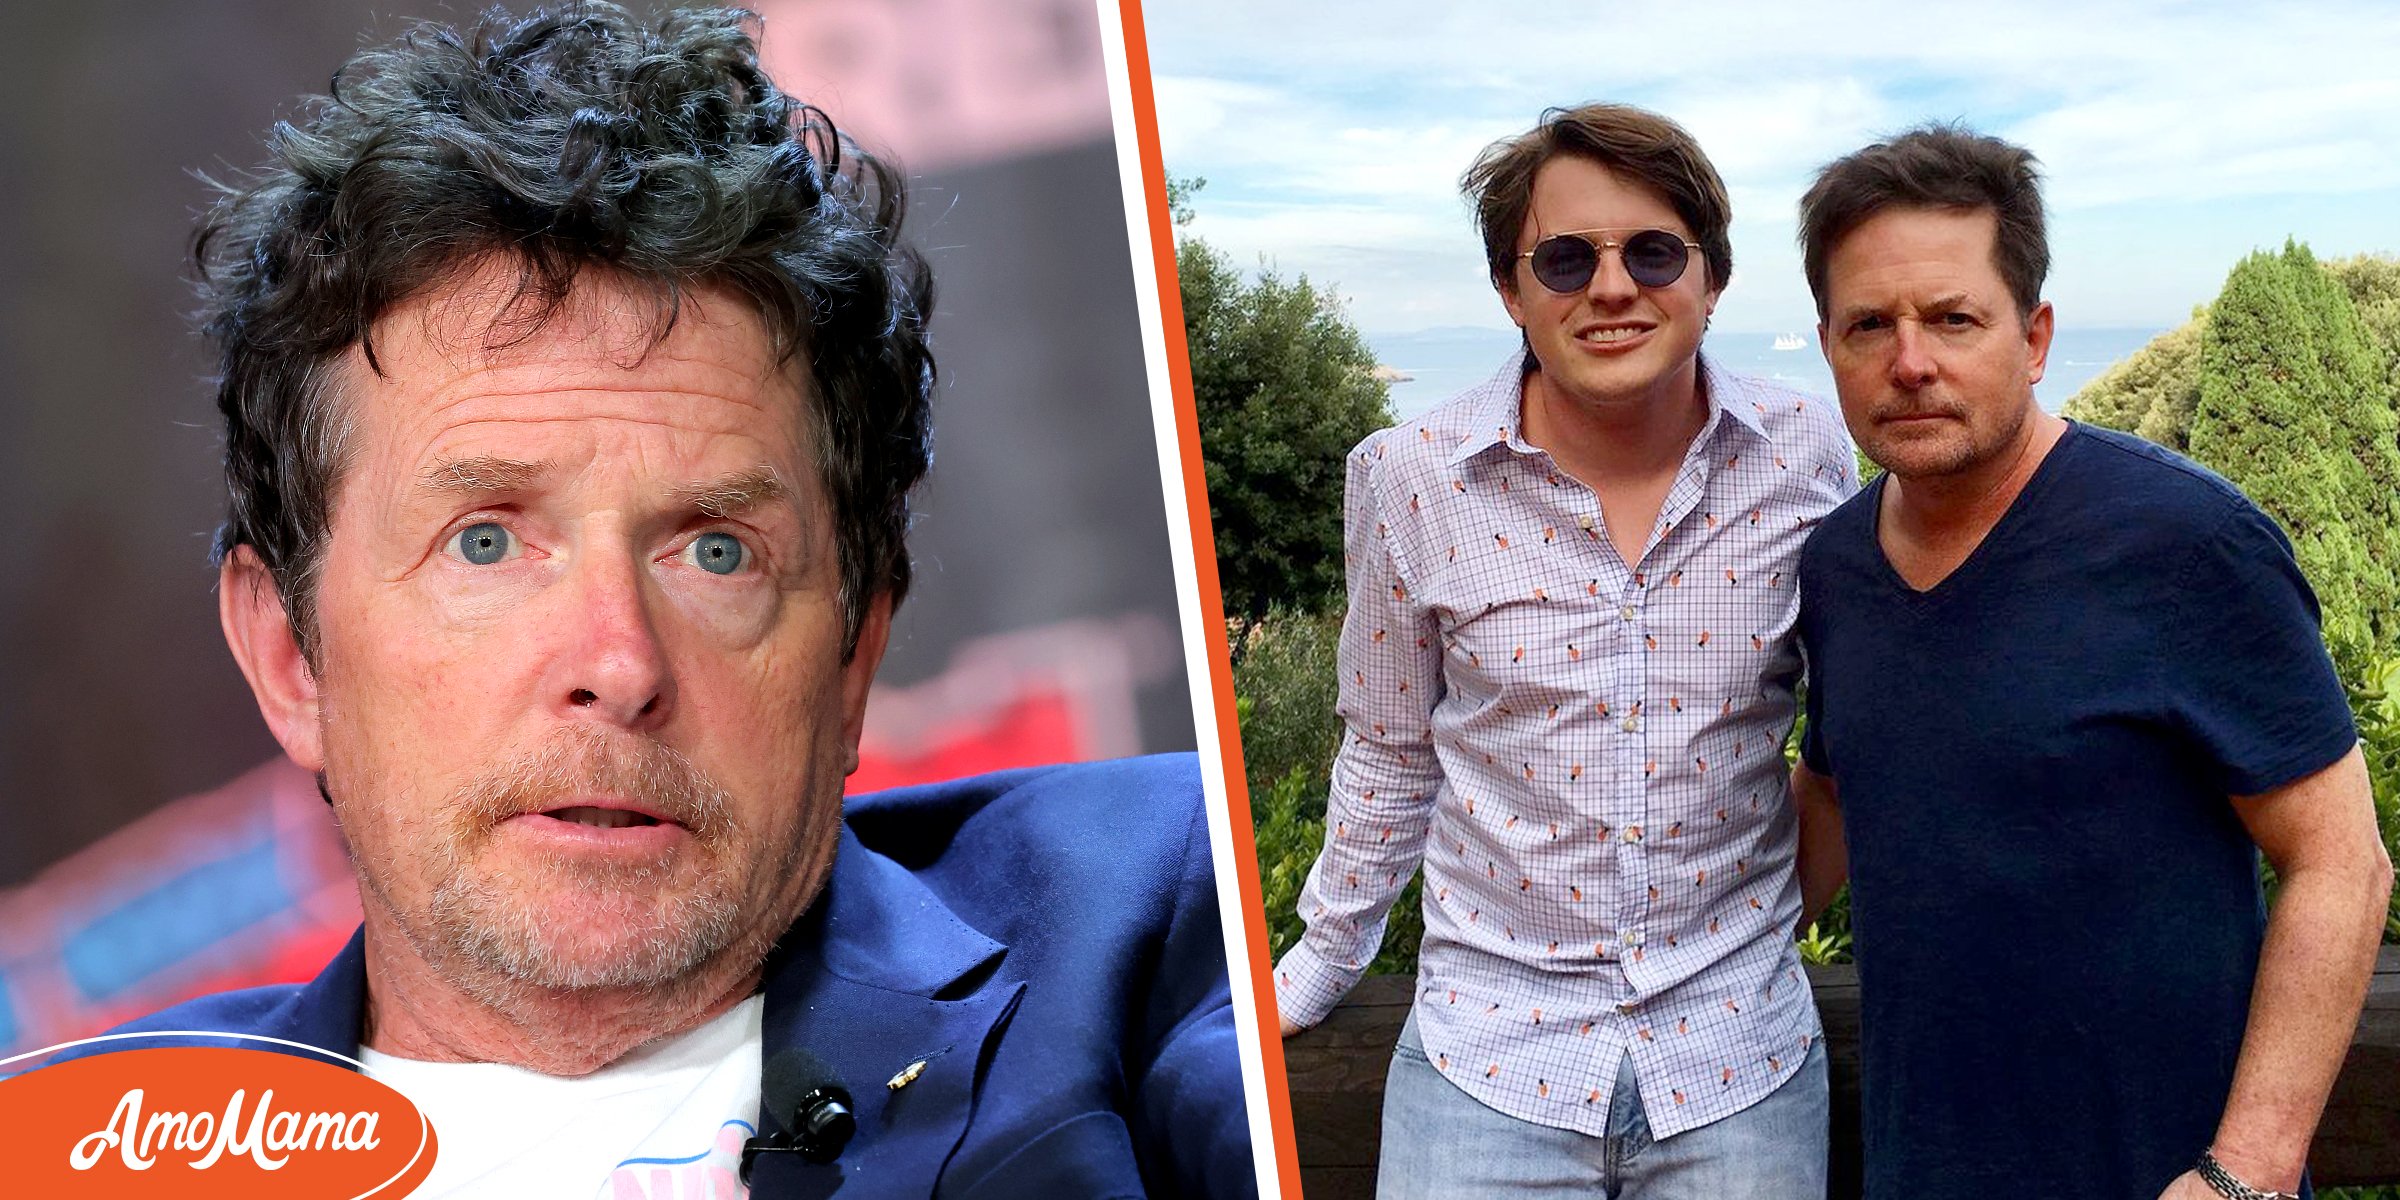 Michael J Fox, retraité, a du mal à marcher à cause de la maladie de Parkinson et fait face à des attaques en ligne – son fils a pris sa défense